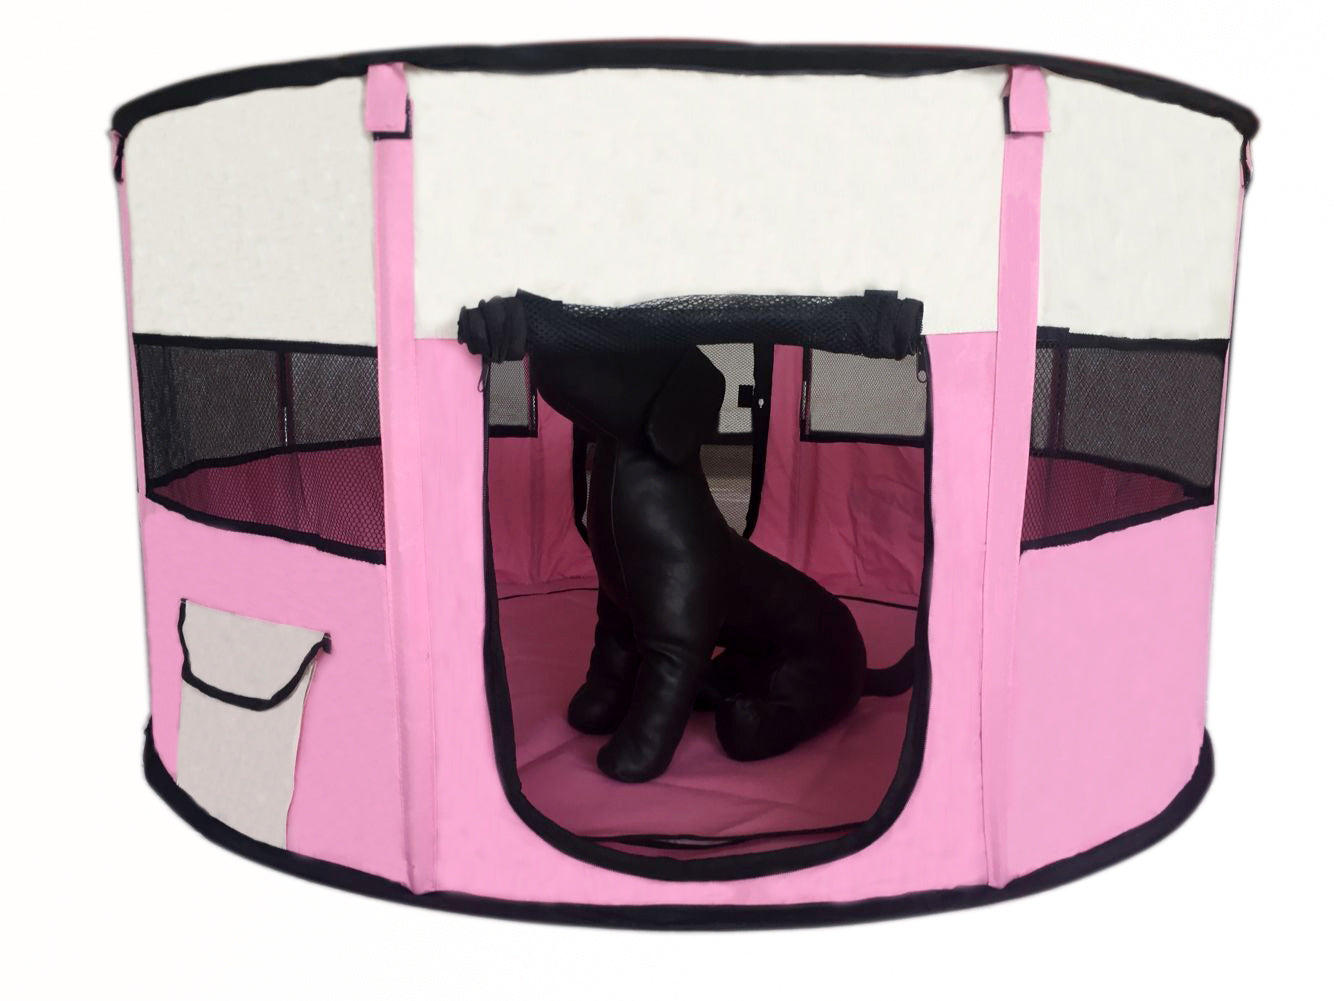 Large Round Portable Soft Playpen Dog Cat Rabbit Puppy Playpen-Pink